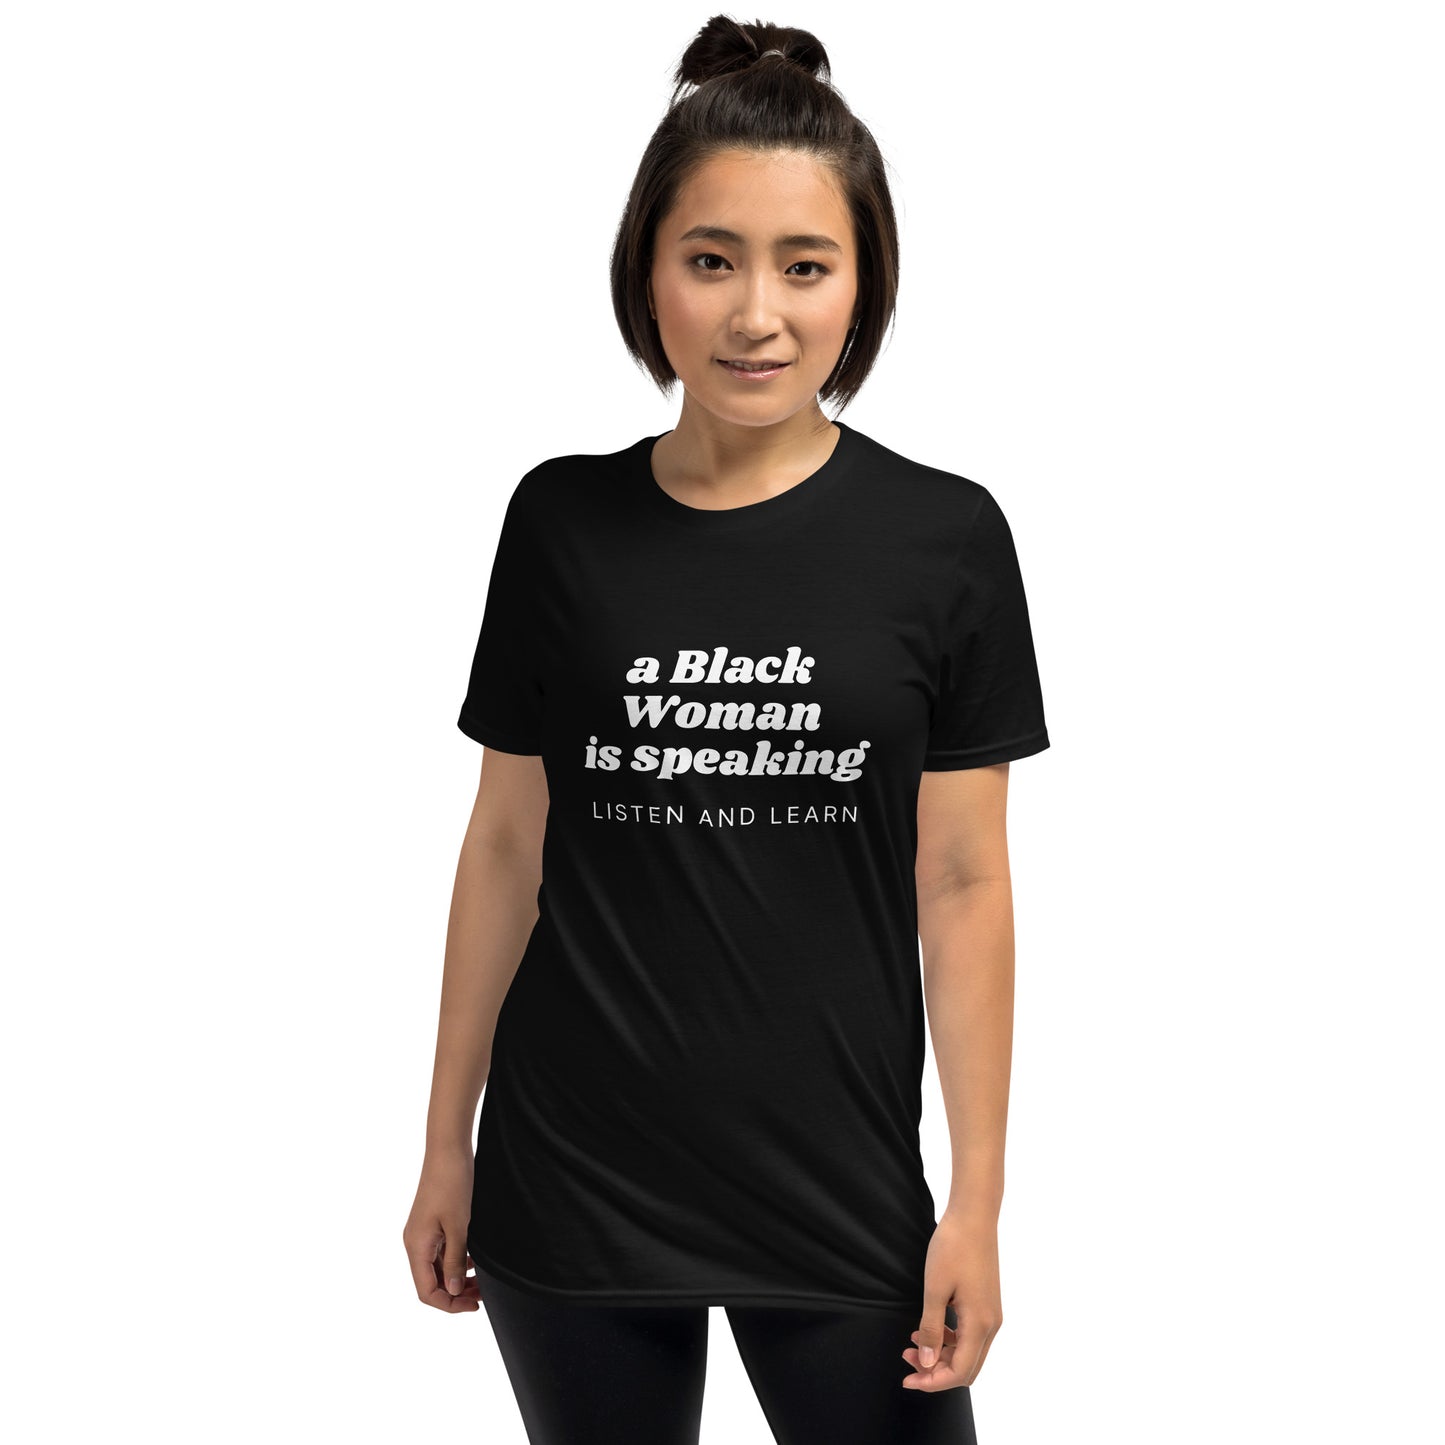 Womens "Listen to Black Women" T-shirt